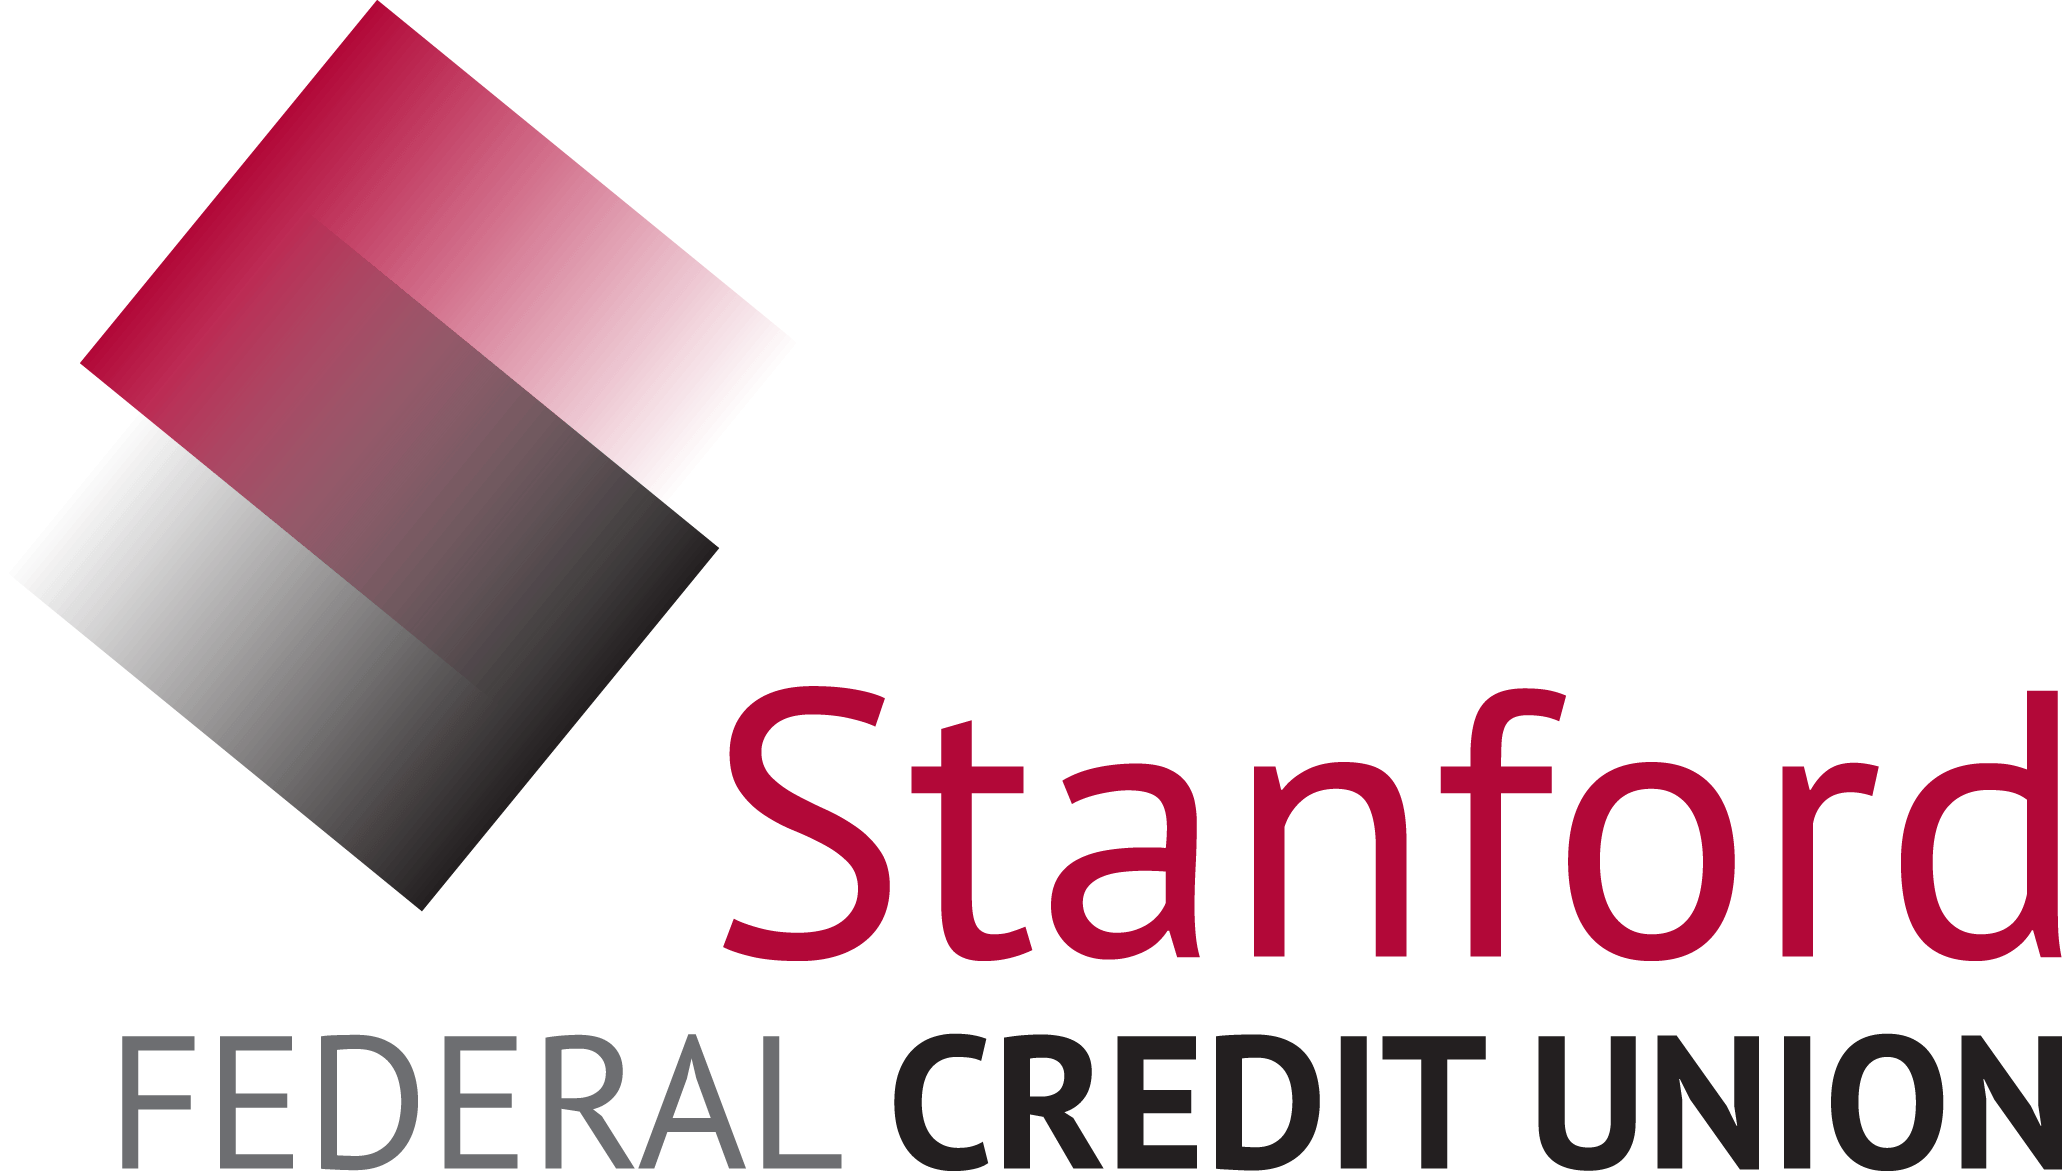 Western Federal Credit Union Logo - Stanford Federal Credit Union